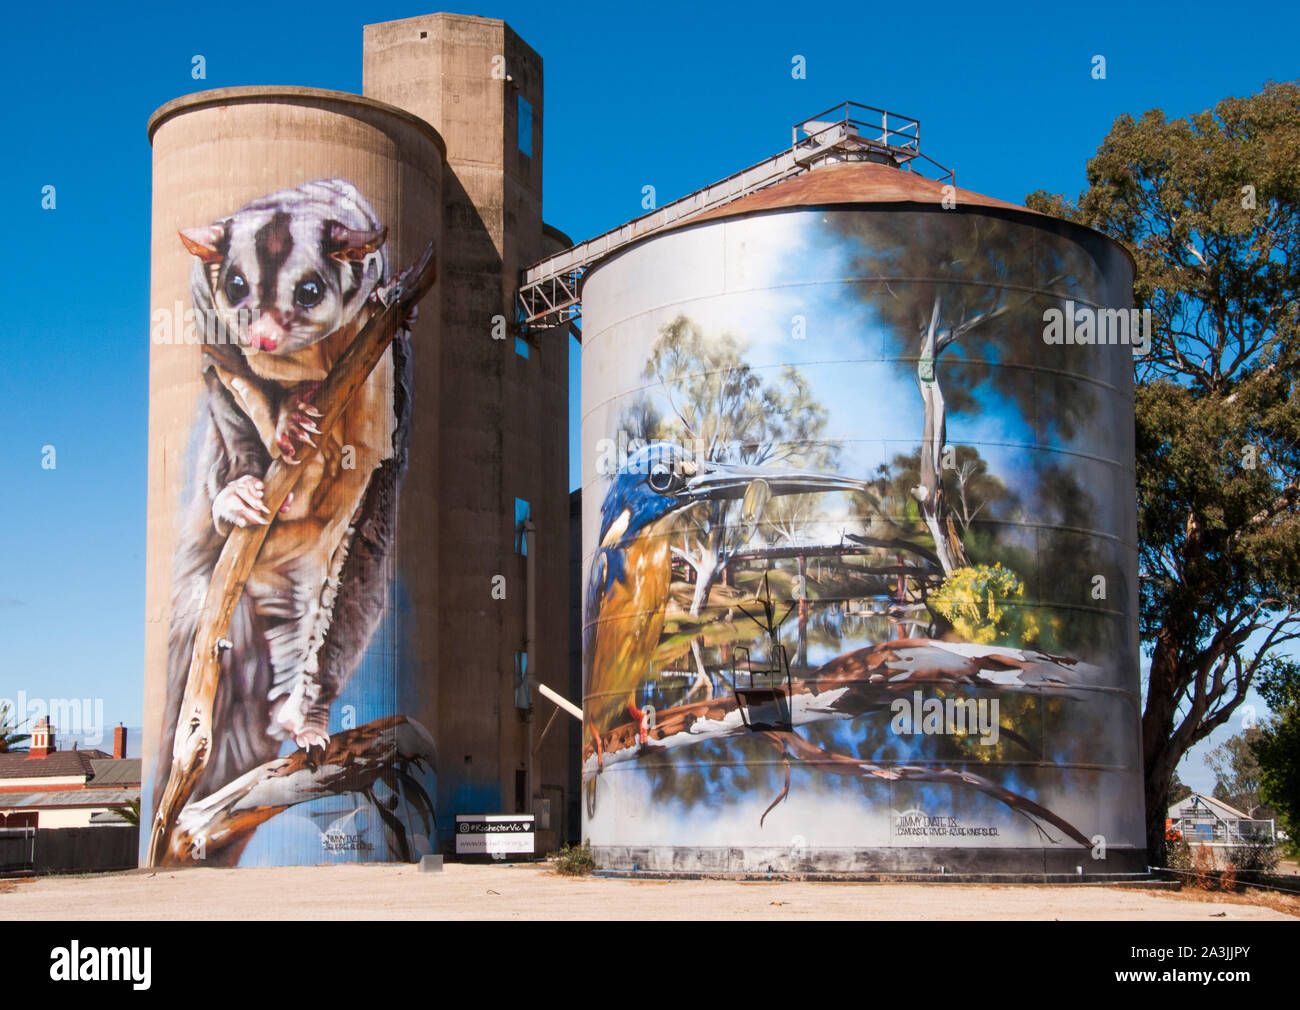 Silo art di Dvate a Rochester, Victoria settentrionale, Australia. Immagine acquisita prima della devastante inondazione dell'ottobre 2022. Foto Stock